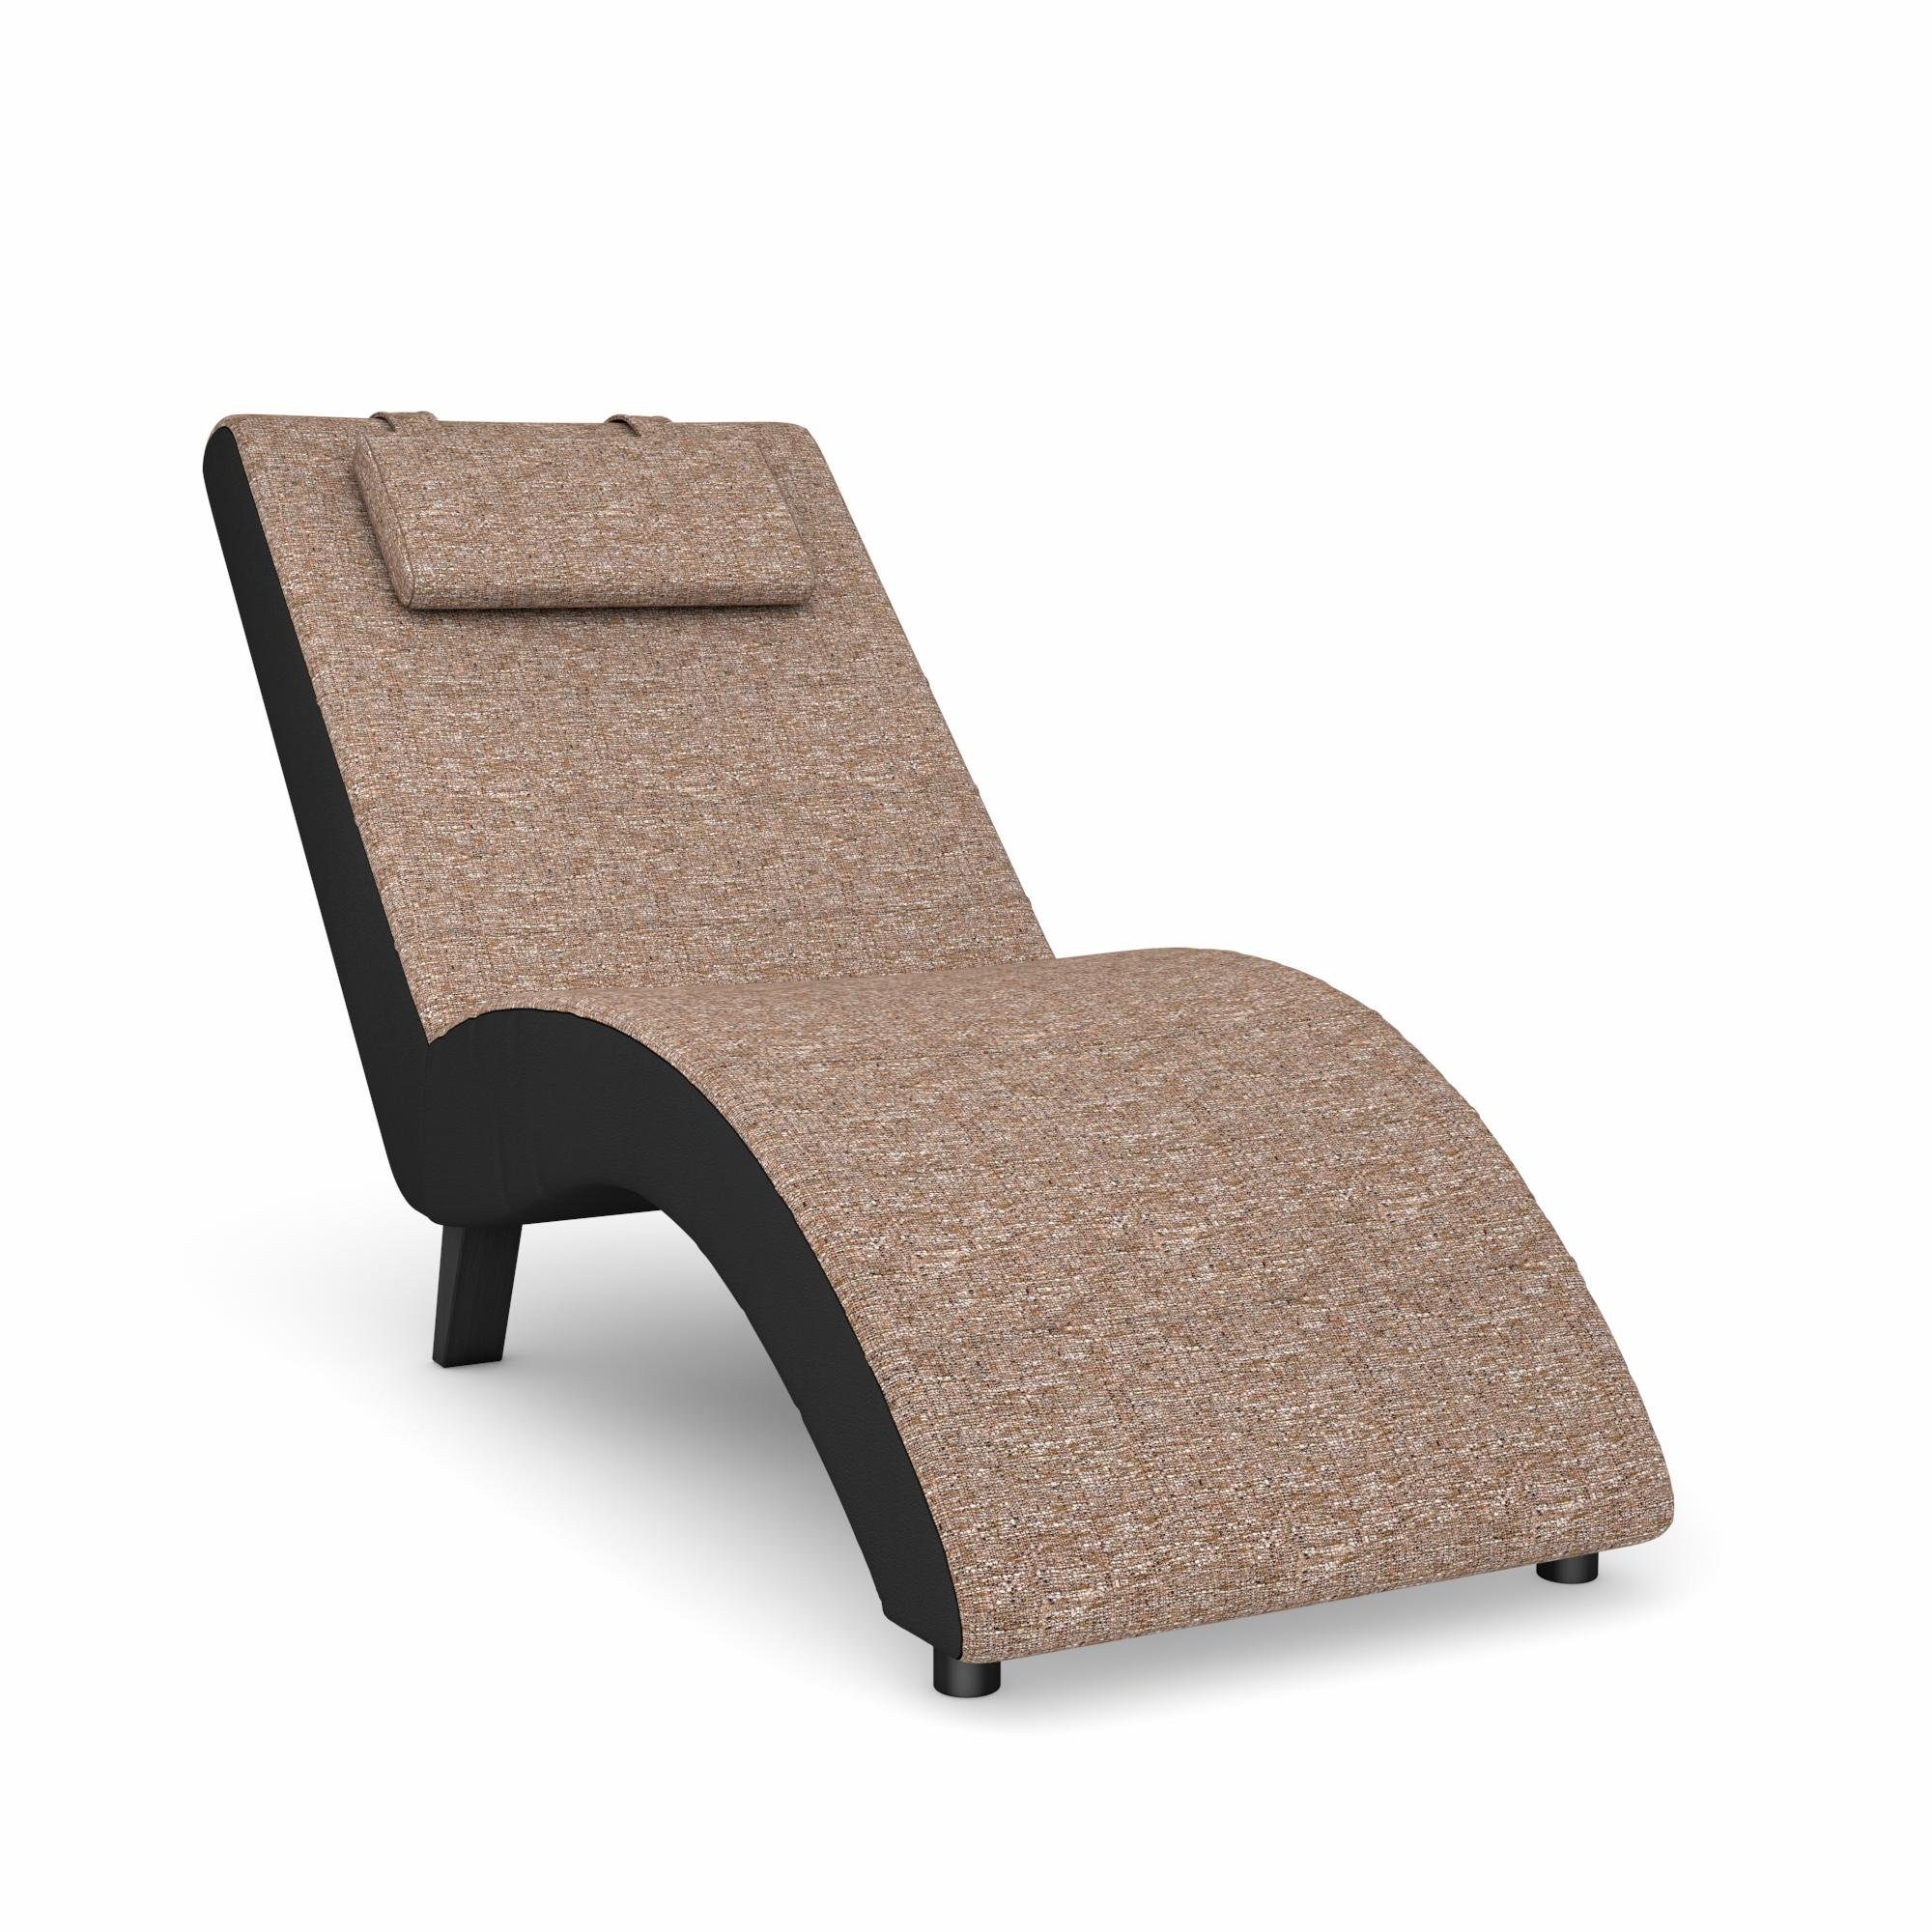 Max Winzer® Stretcher Build-a-chair Nova inclusief nekkussen, om zelf te ontwerpen